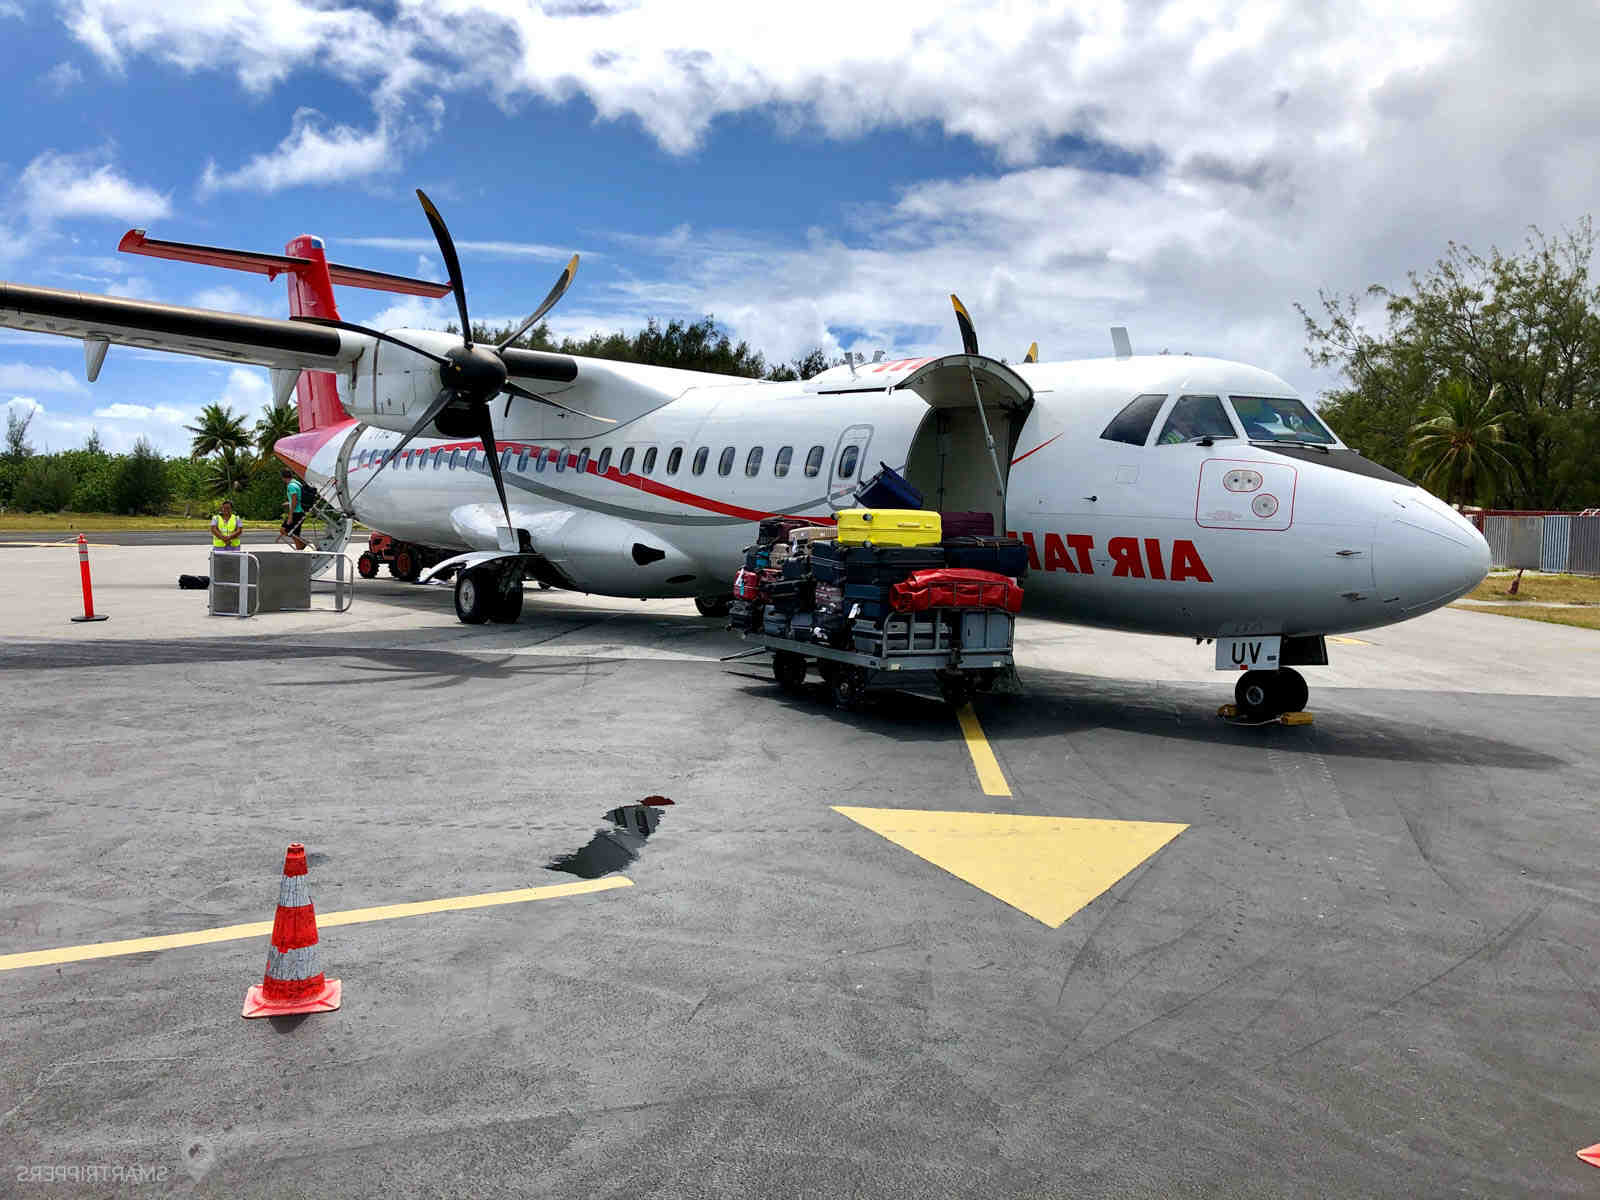 Quanto custa uma passagem de avião para ir para o Taiti?